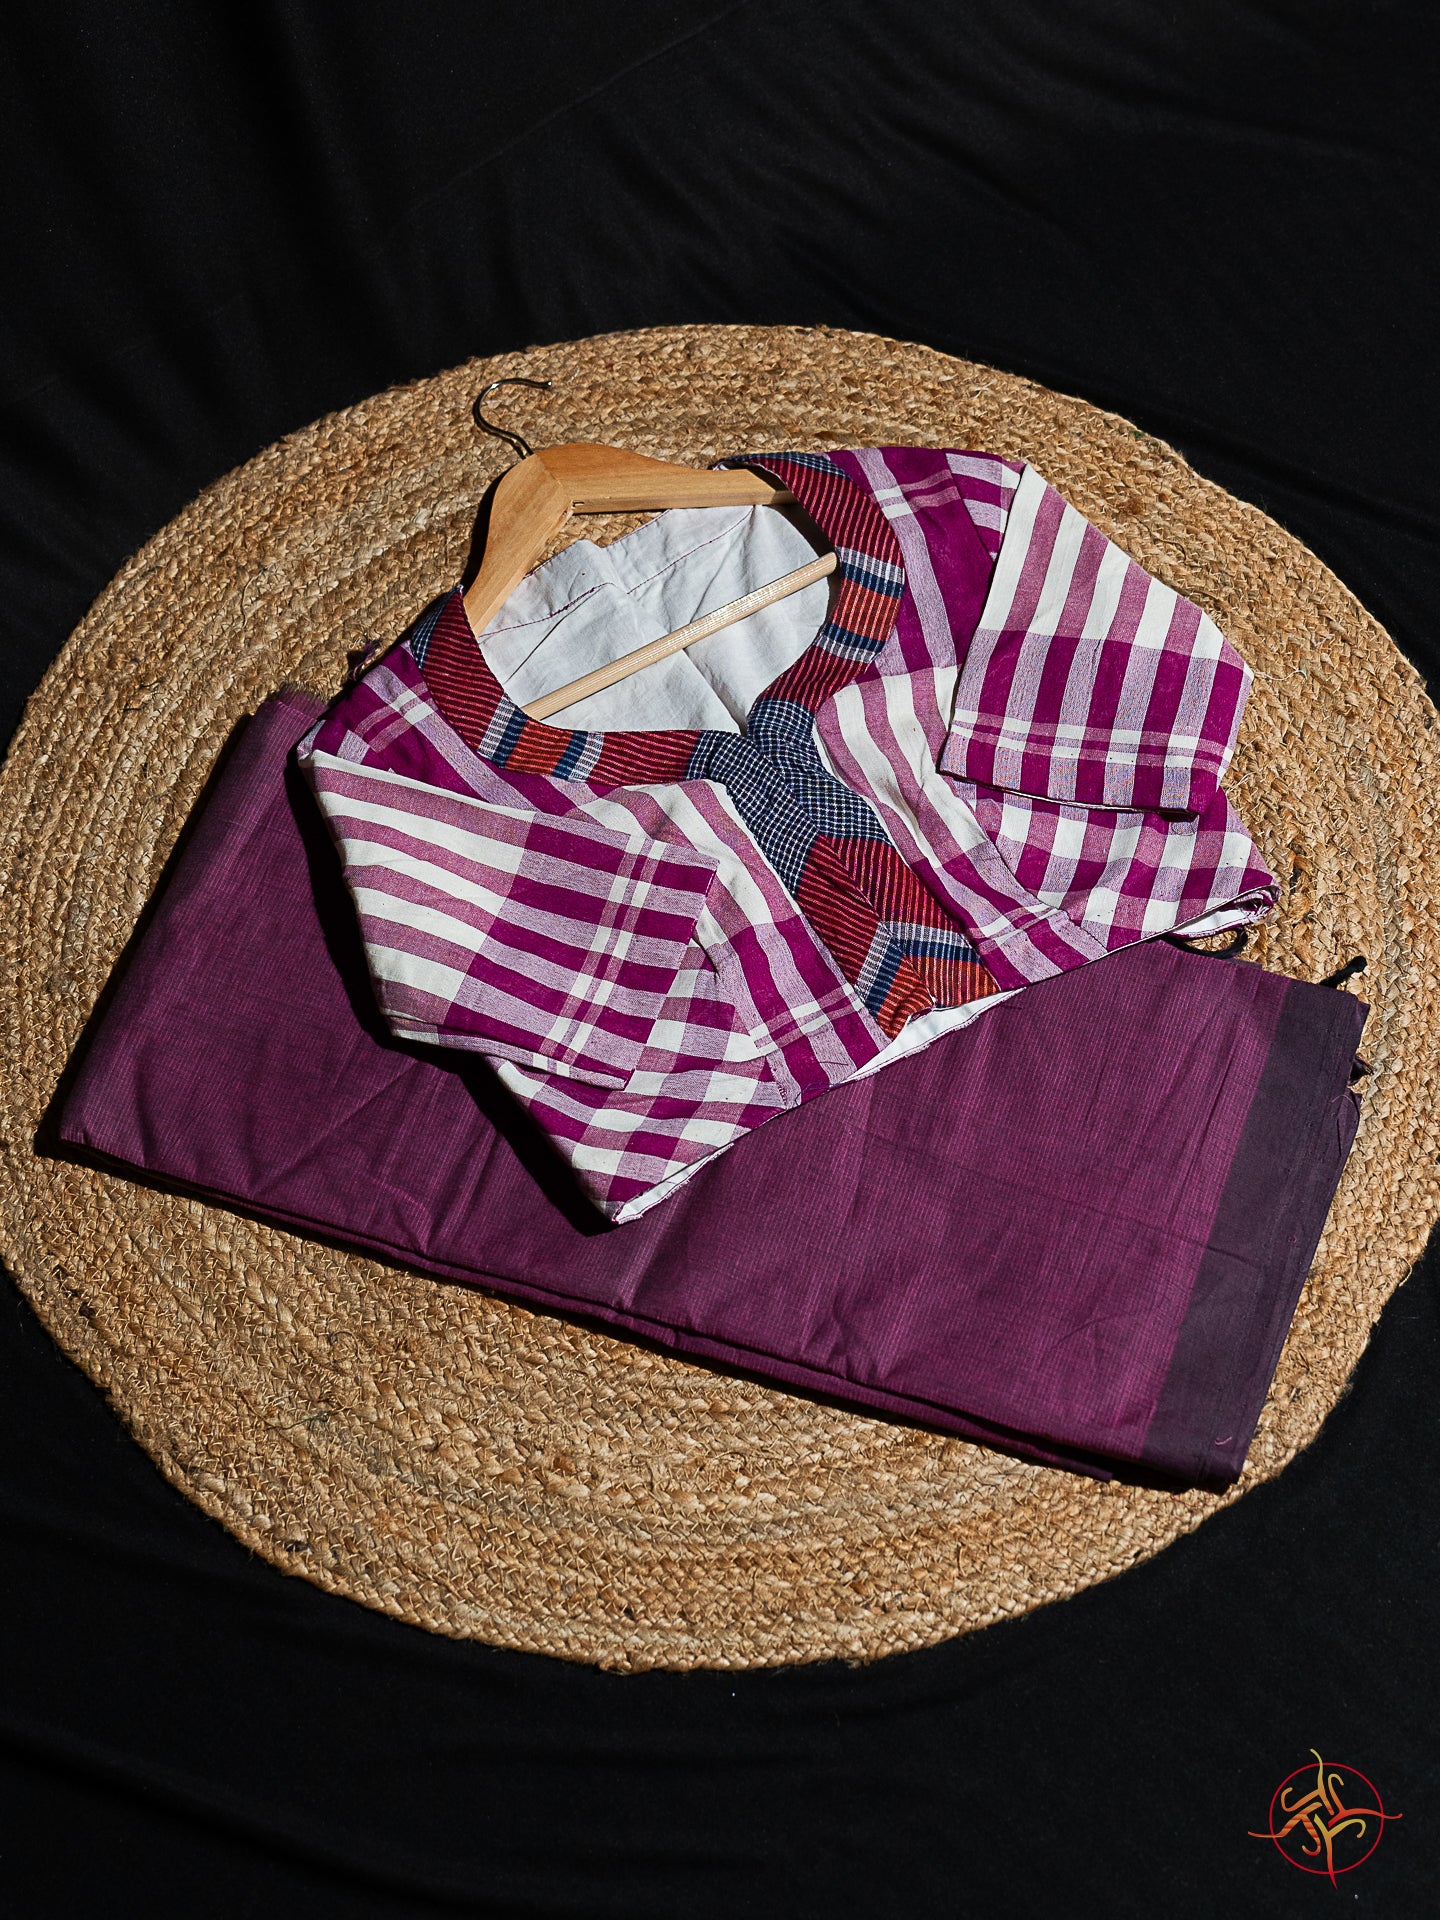 Mangalgiri saree blouse combination - Umbara designs